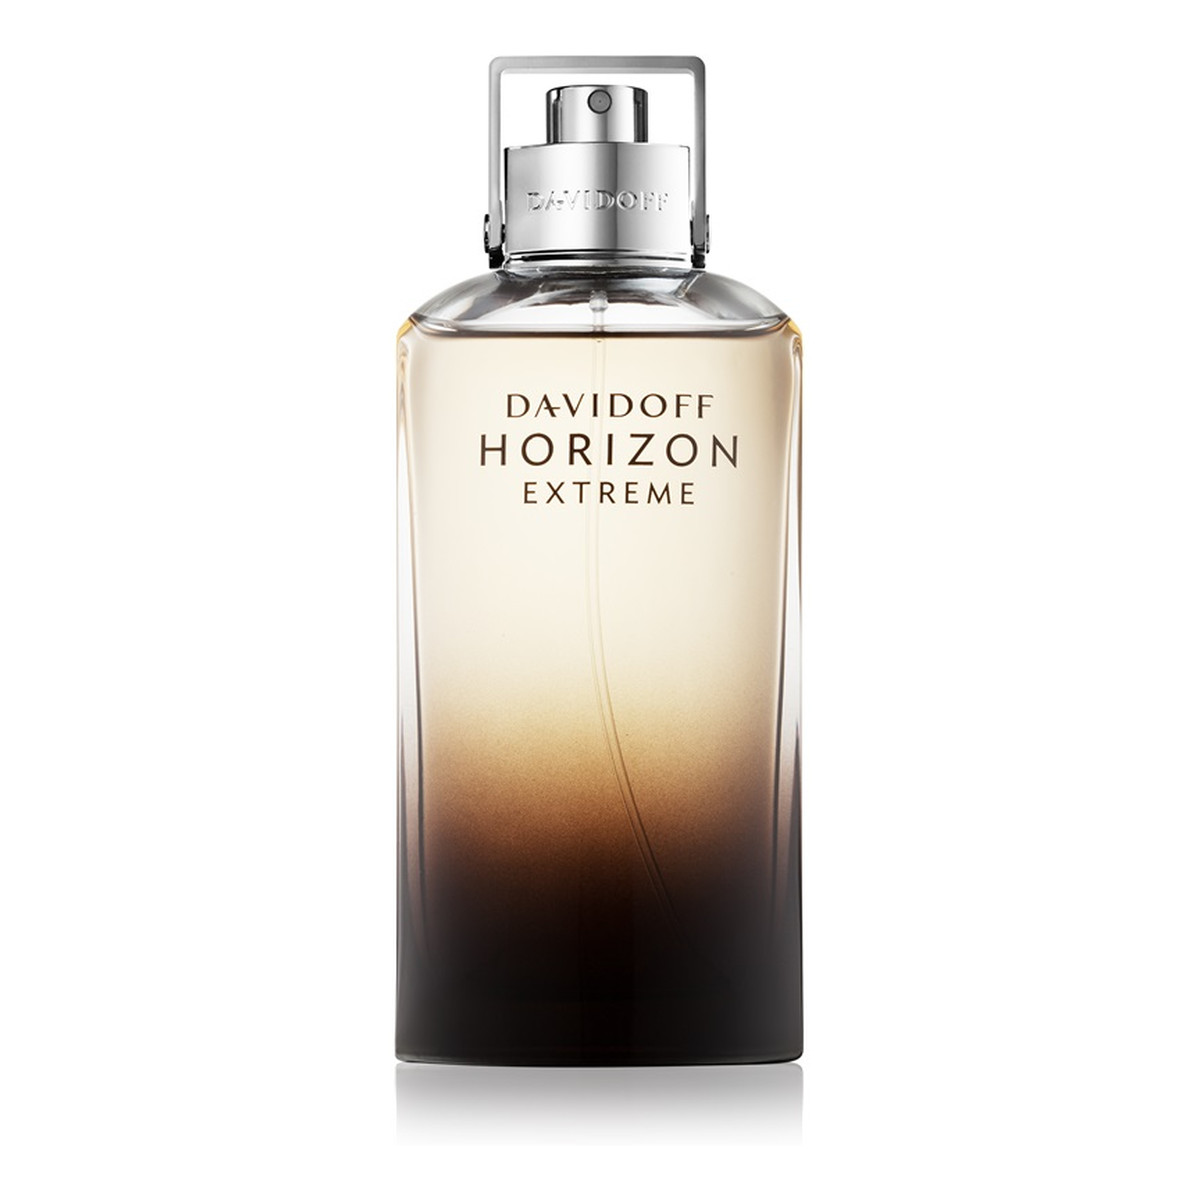 Davidoff Horizon Extreme woda perfumowana dla mężczyzn 125ml